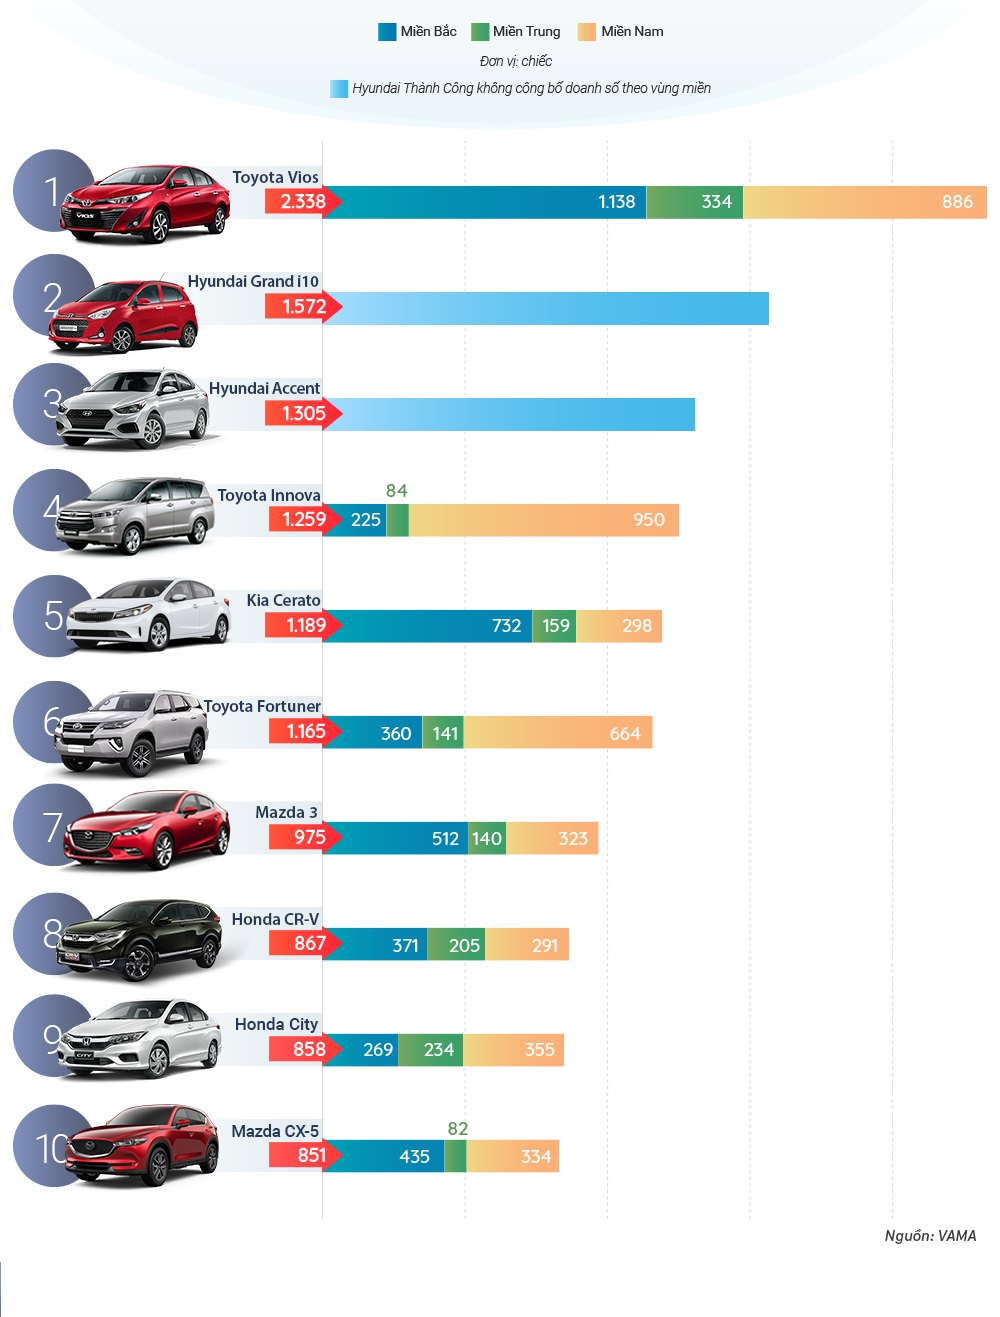 Ôtô bán chạy nhất tháng 9/2018 – Vios vẫn giữ ngôi đầu quen thuộc.